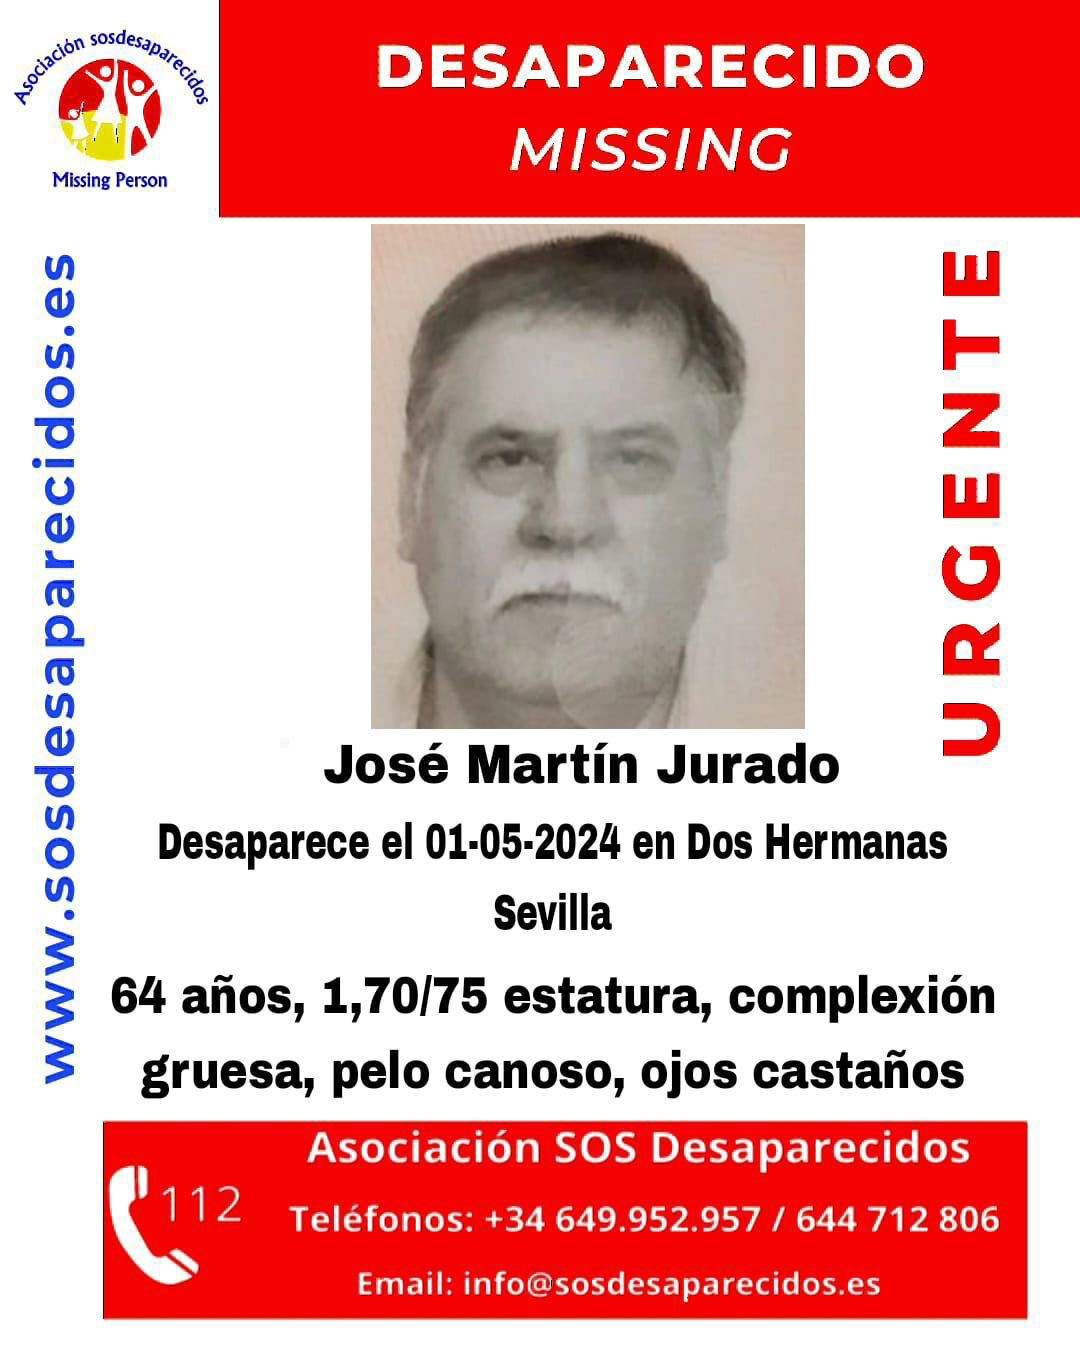 La familia del varón con alzhéimer desaparecido en Dos Hermanas (Sevilla) pide 